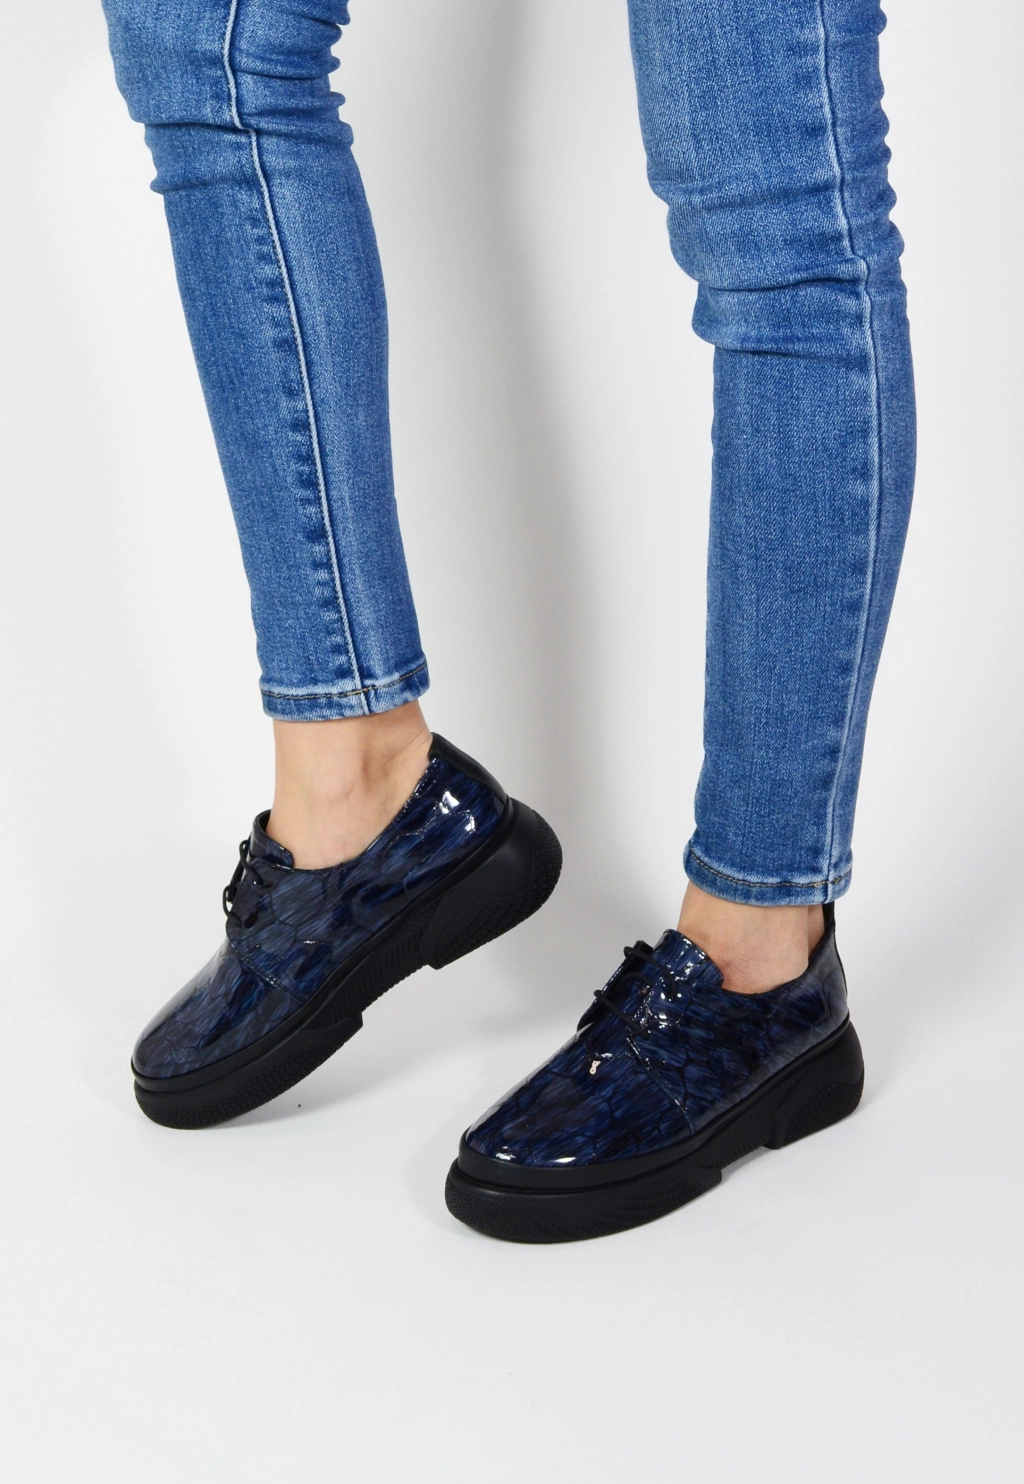 Дамски лачени обувки в син цвят с връзки